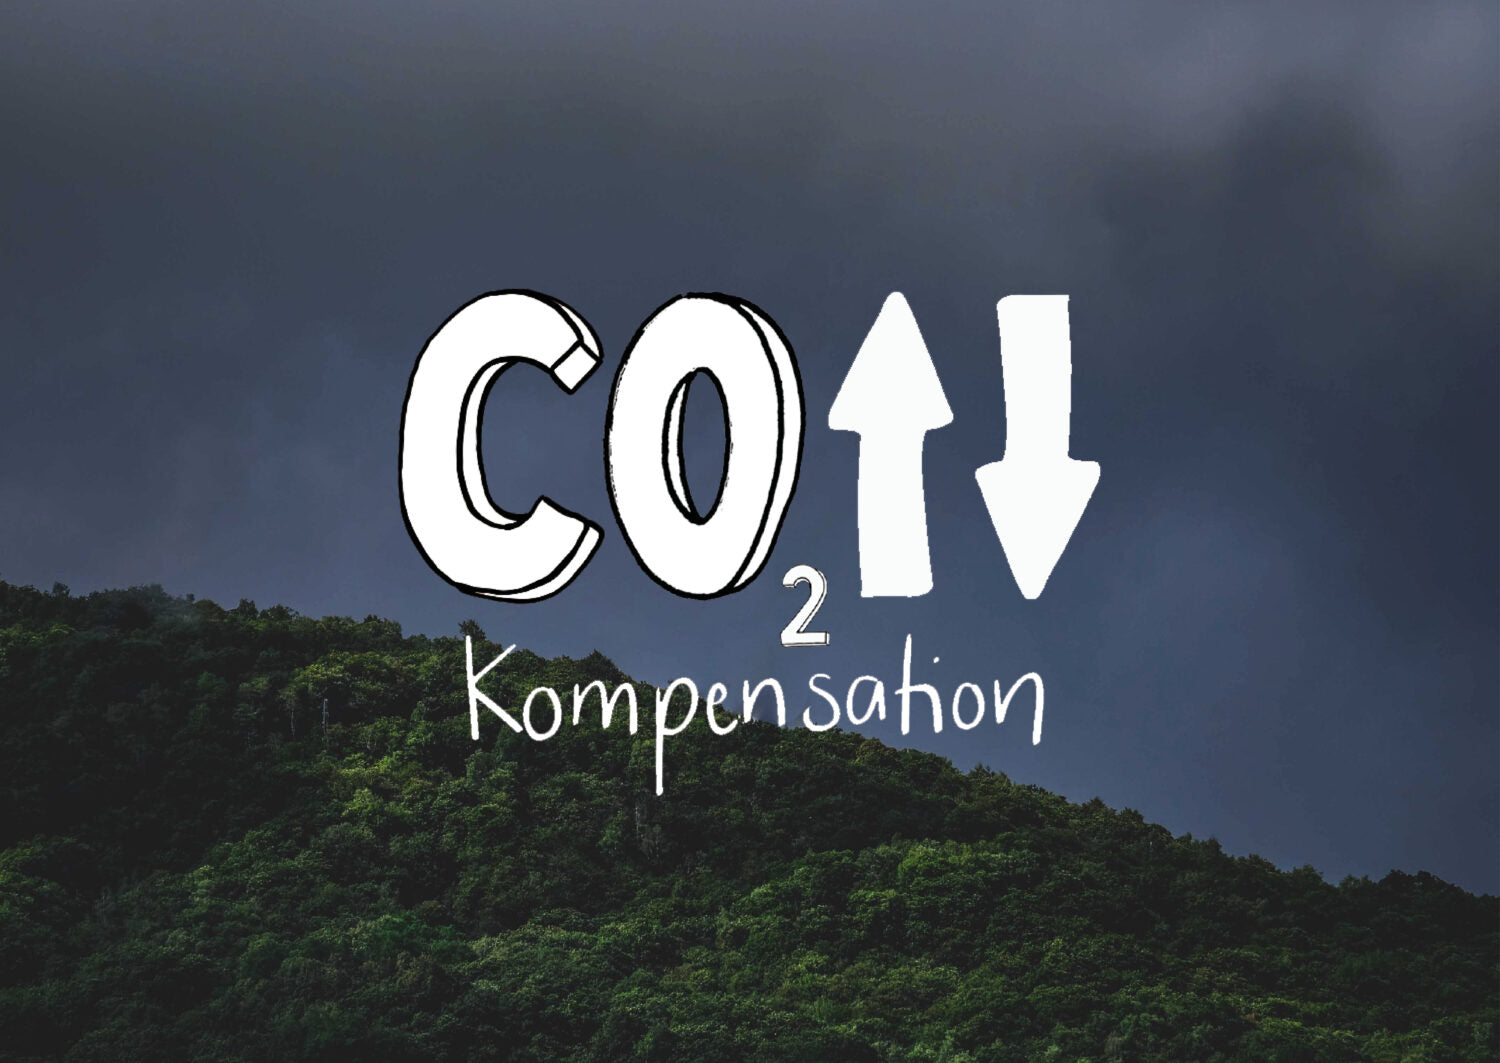 CO2-Kompensation: Vertrauenswürdige Organisationen, Zertifikate und Klimaschutzprojekte